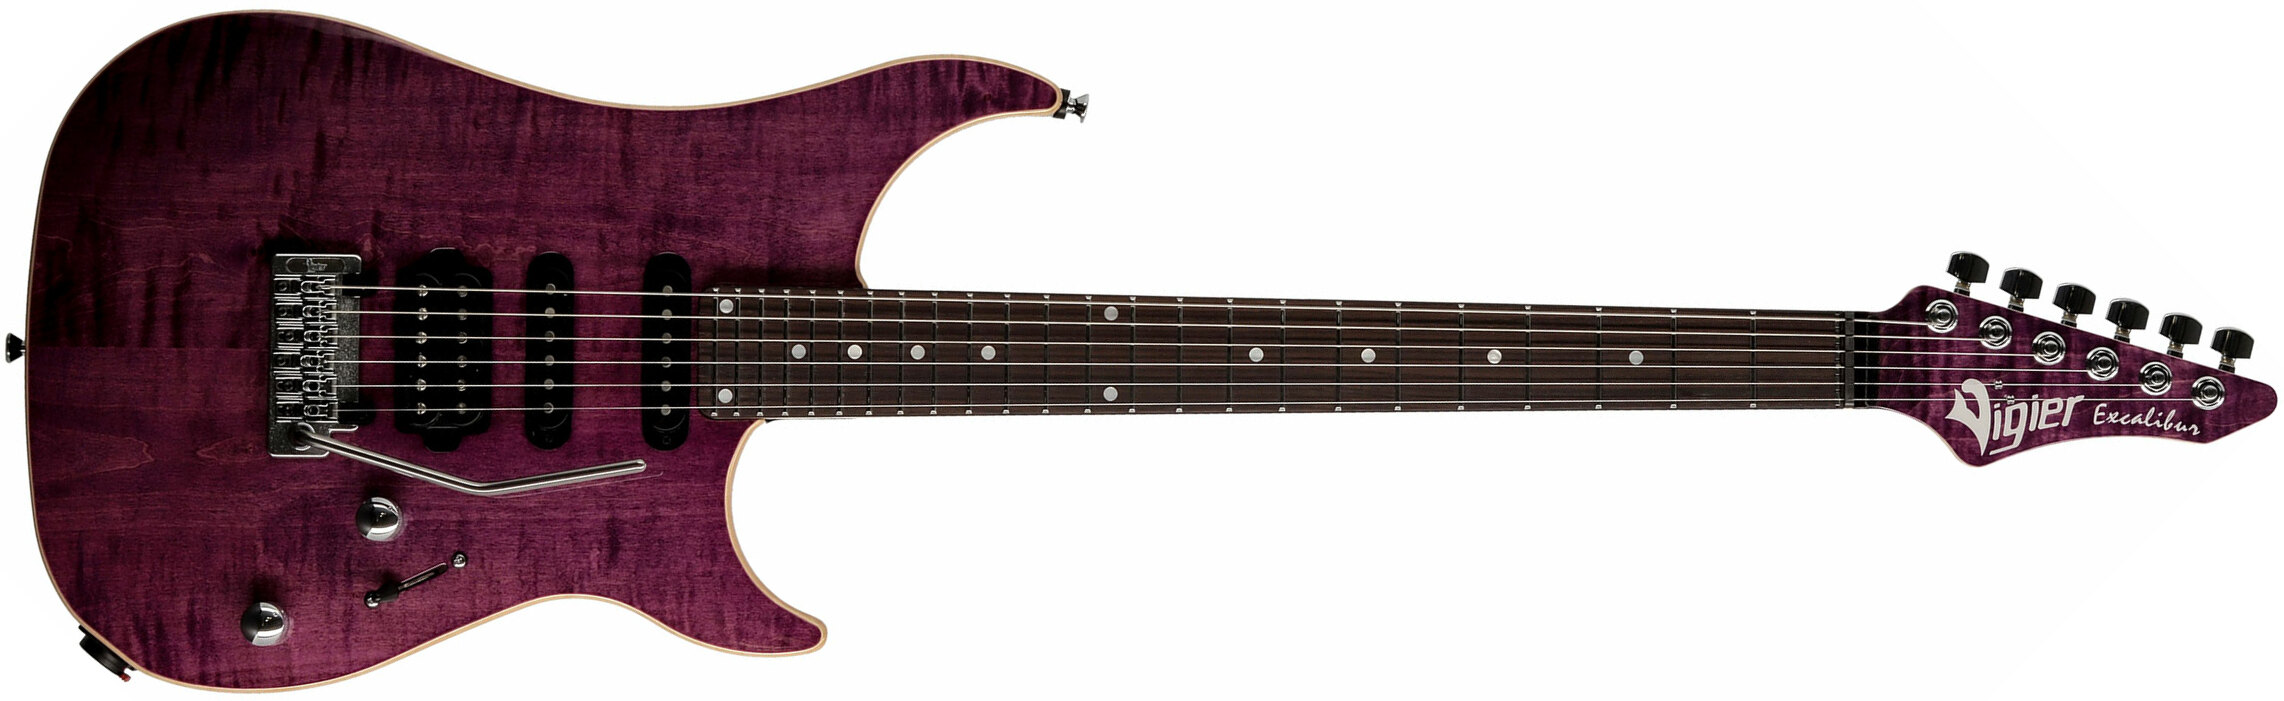 Vigier Excalibur Ultra Blues Hss Trem Rw - Amethyst Purple - E-Gitarre in Str-Form - Main picture